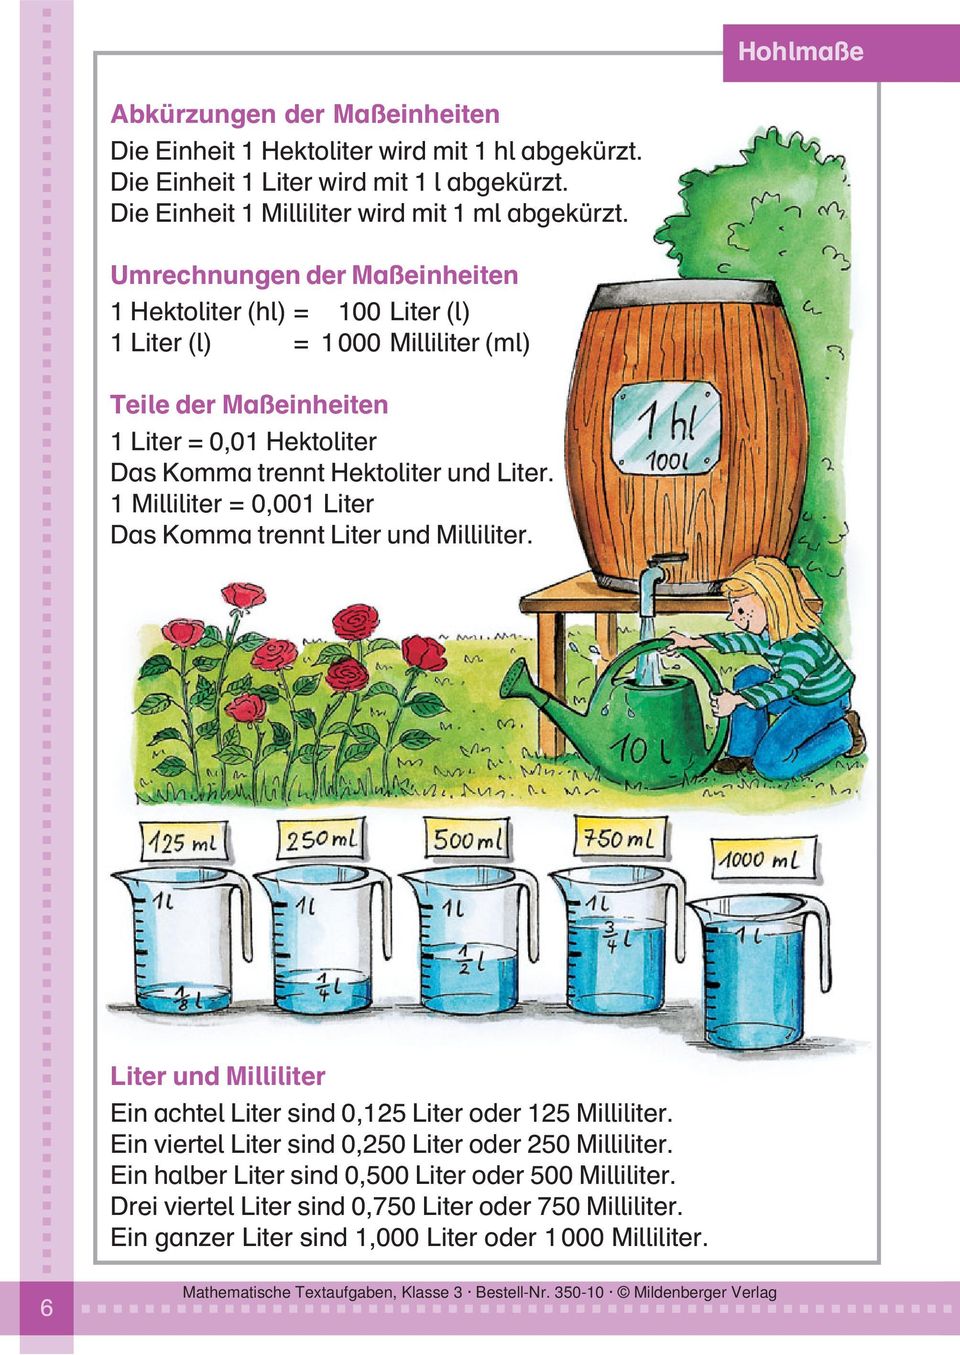 Liter. 1 Milliliter = 0,001 Liter Das Komma trennt Liter und Milliliter. Liter und Milliliter Ein achtel Liter sind 0,125 Liter oder 125 Milliliter.